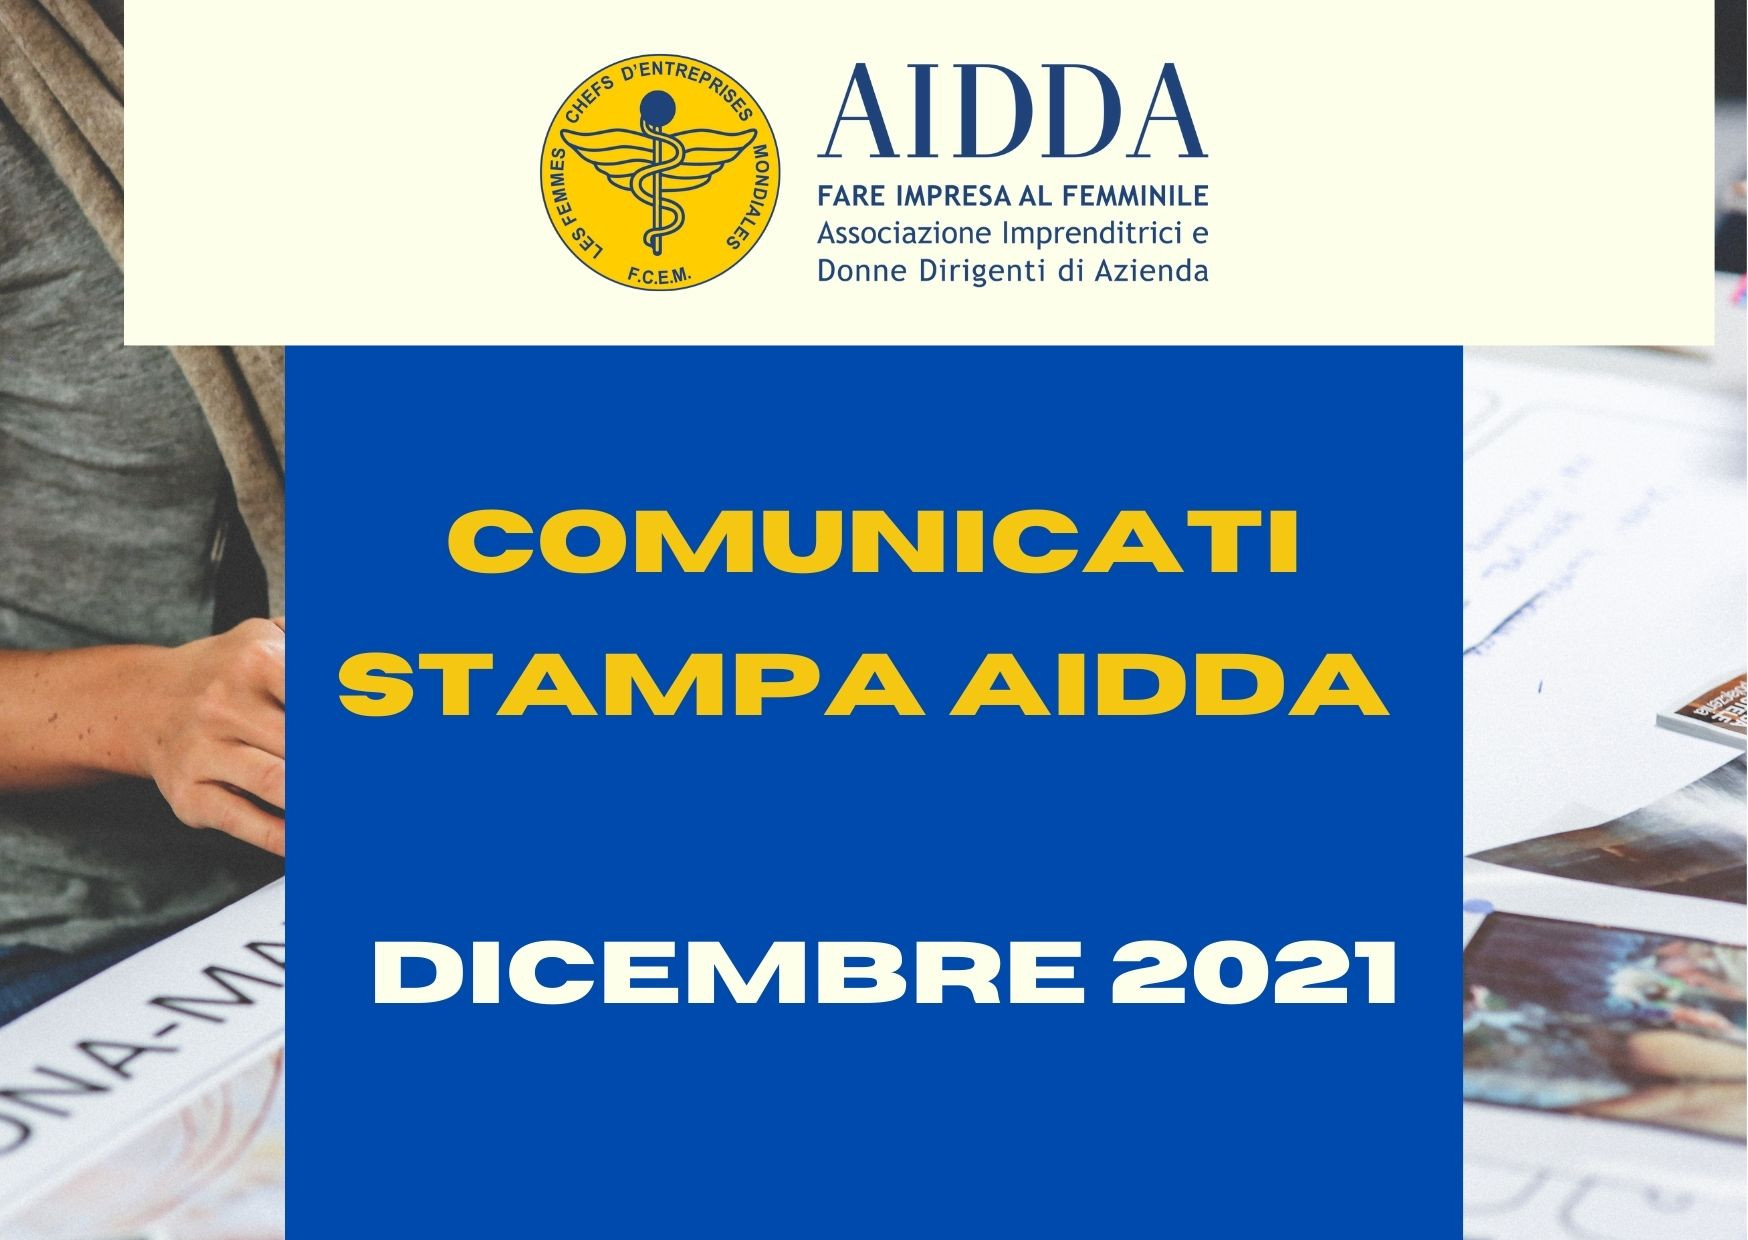 COMUNICATI STAMPA AIDDA dicembre 2021.jpg